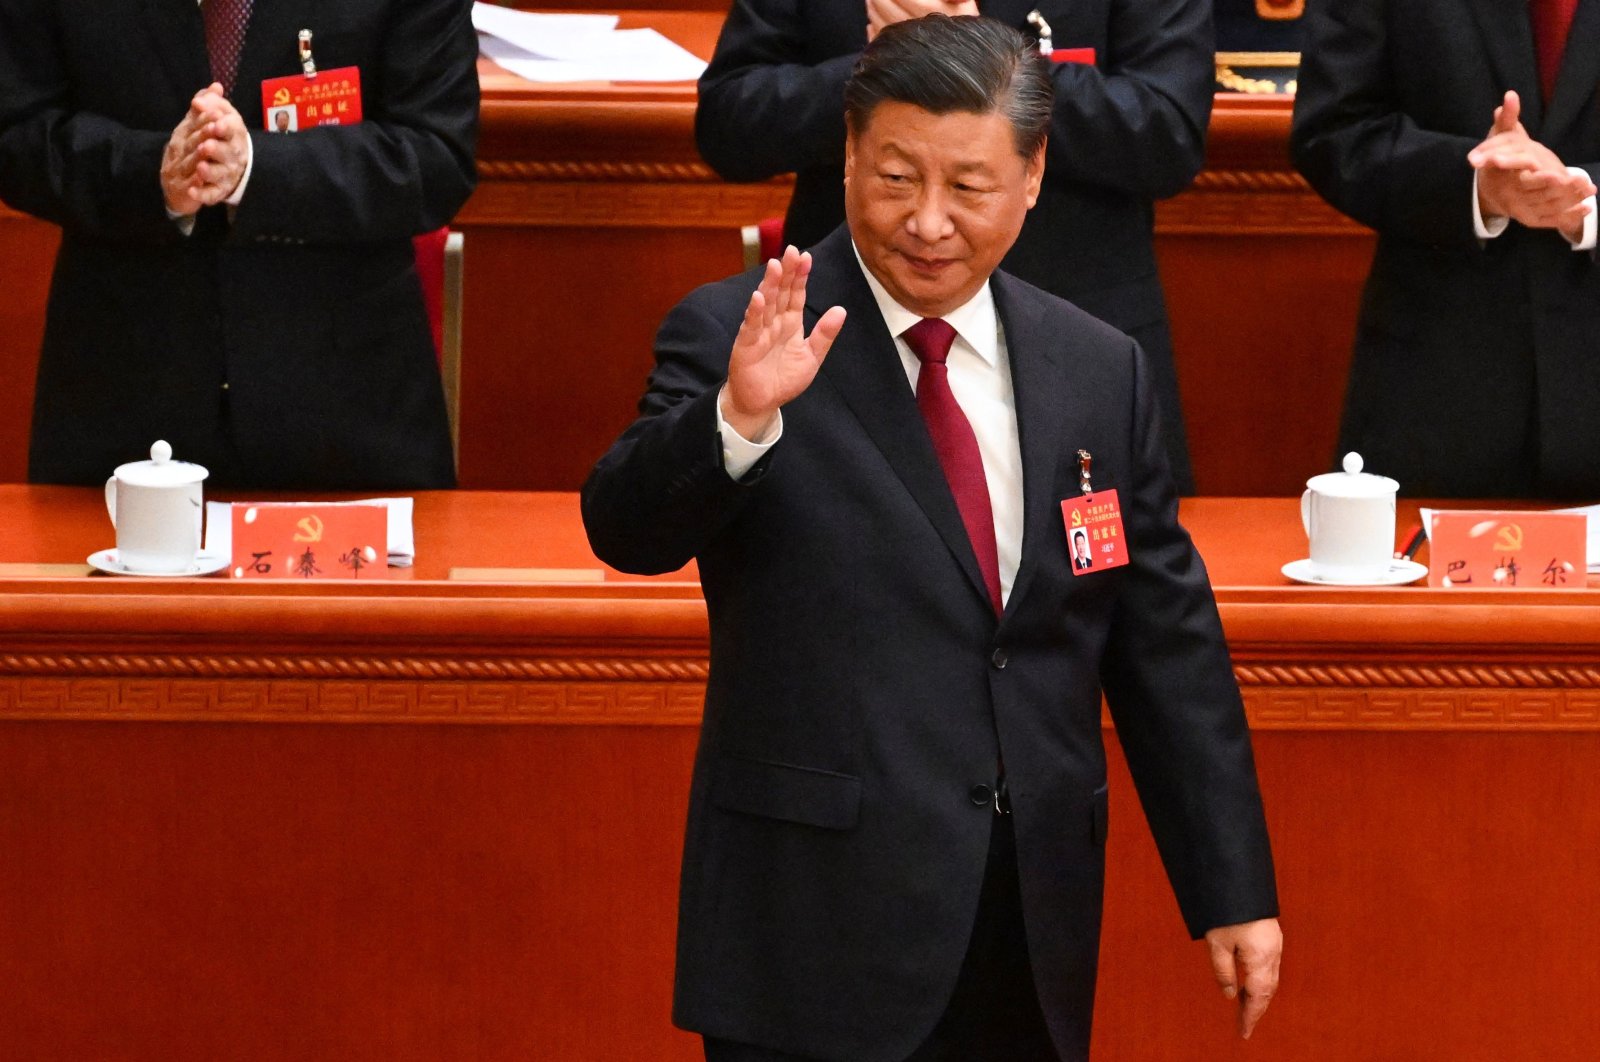 Çin, Tayvan’a karşı güç kullanma hakkından asla vazgeçmeyecek: Xi